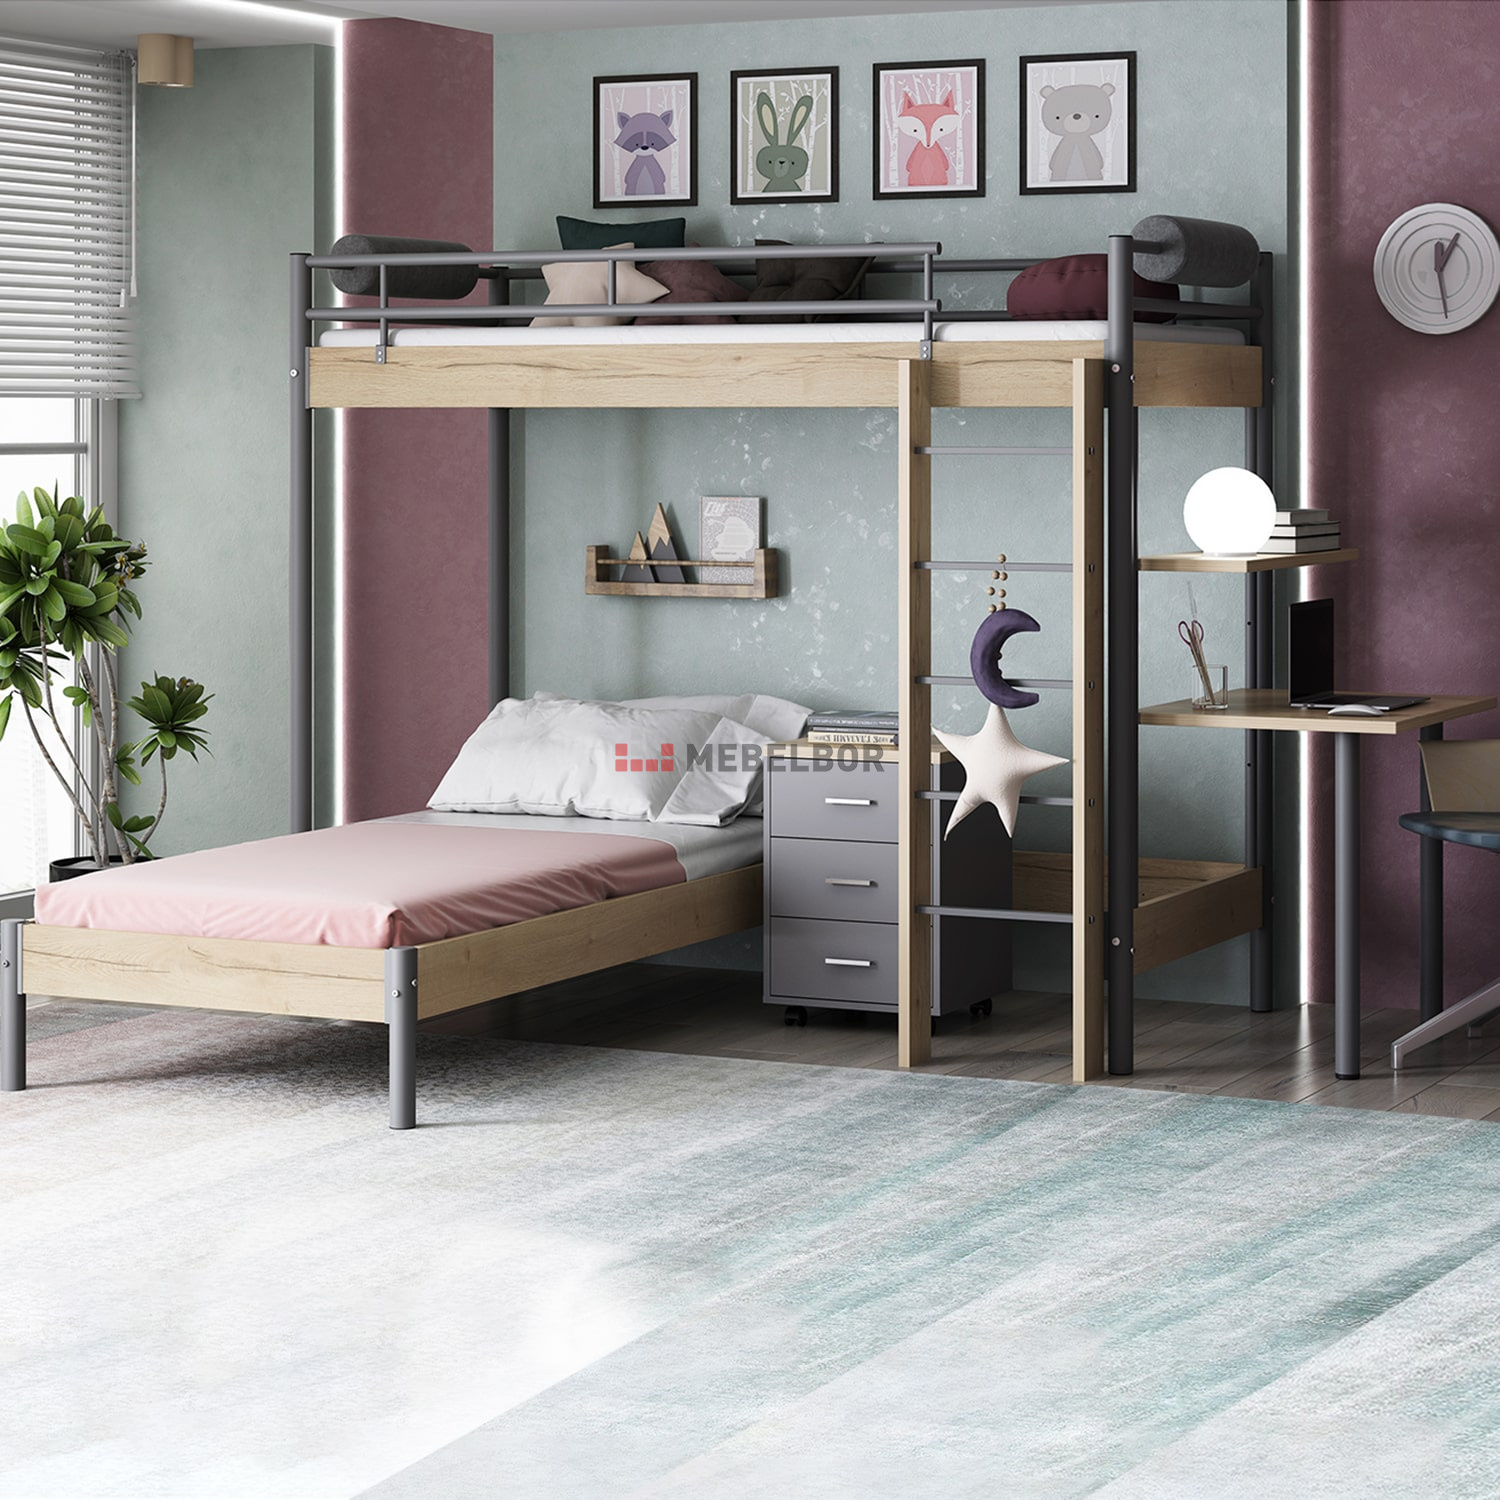 Кровать-чердак: экономим пространство квартиры с помощью оригинальной и стильной мебели